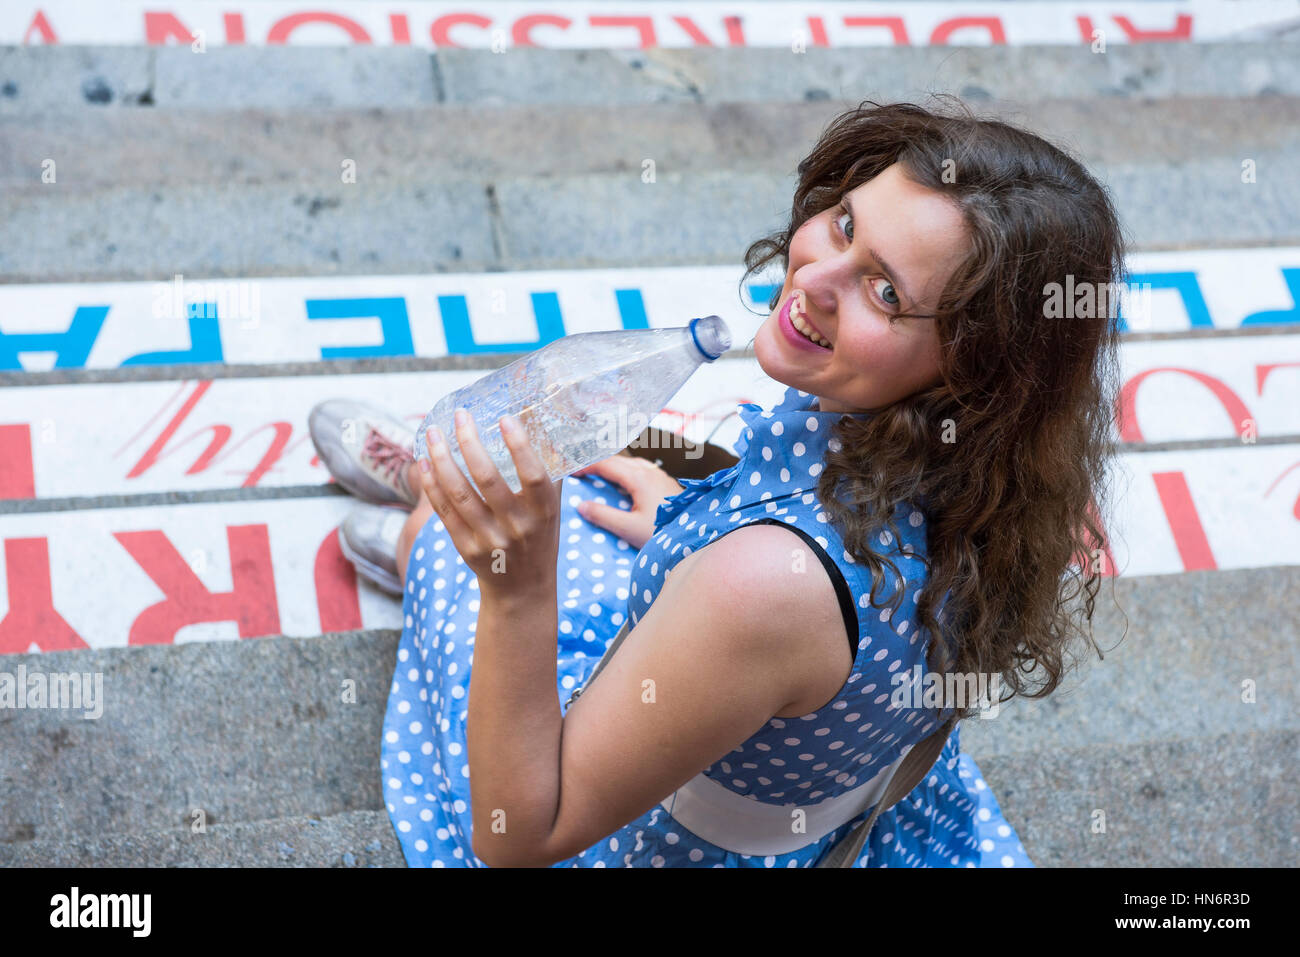 Jeune femme avec robe à pois bleu assis sur les marches la consommation de boissons de l'eau dans une bouteille transparente et de rire Banque D'Images